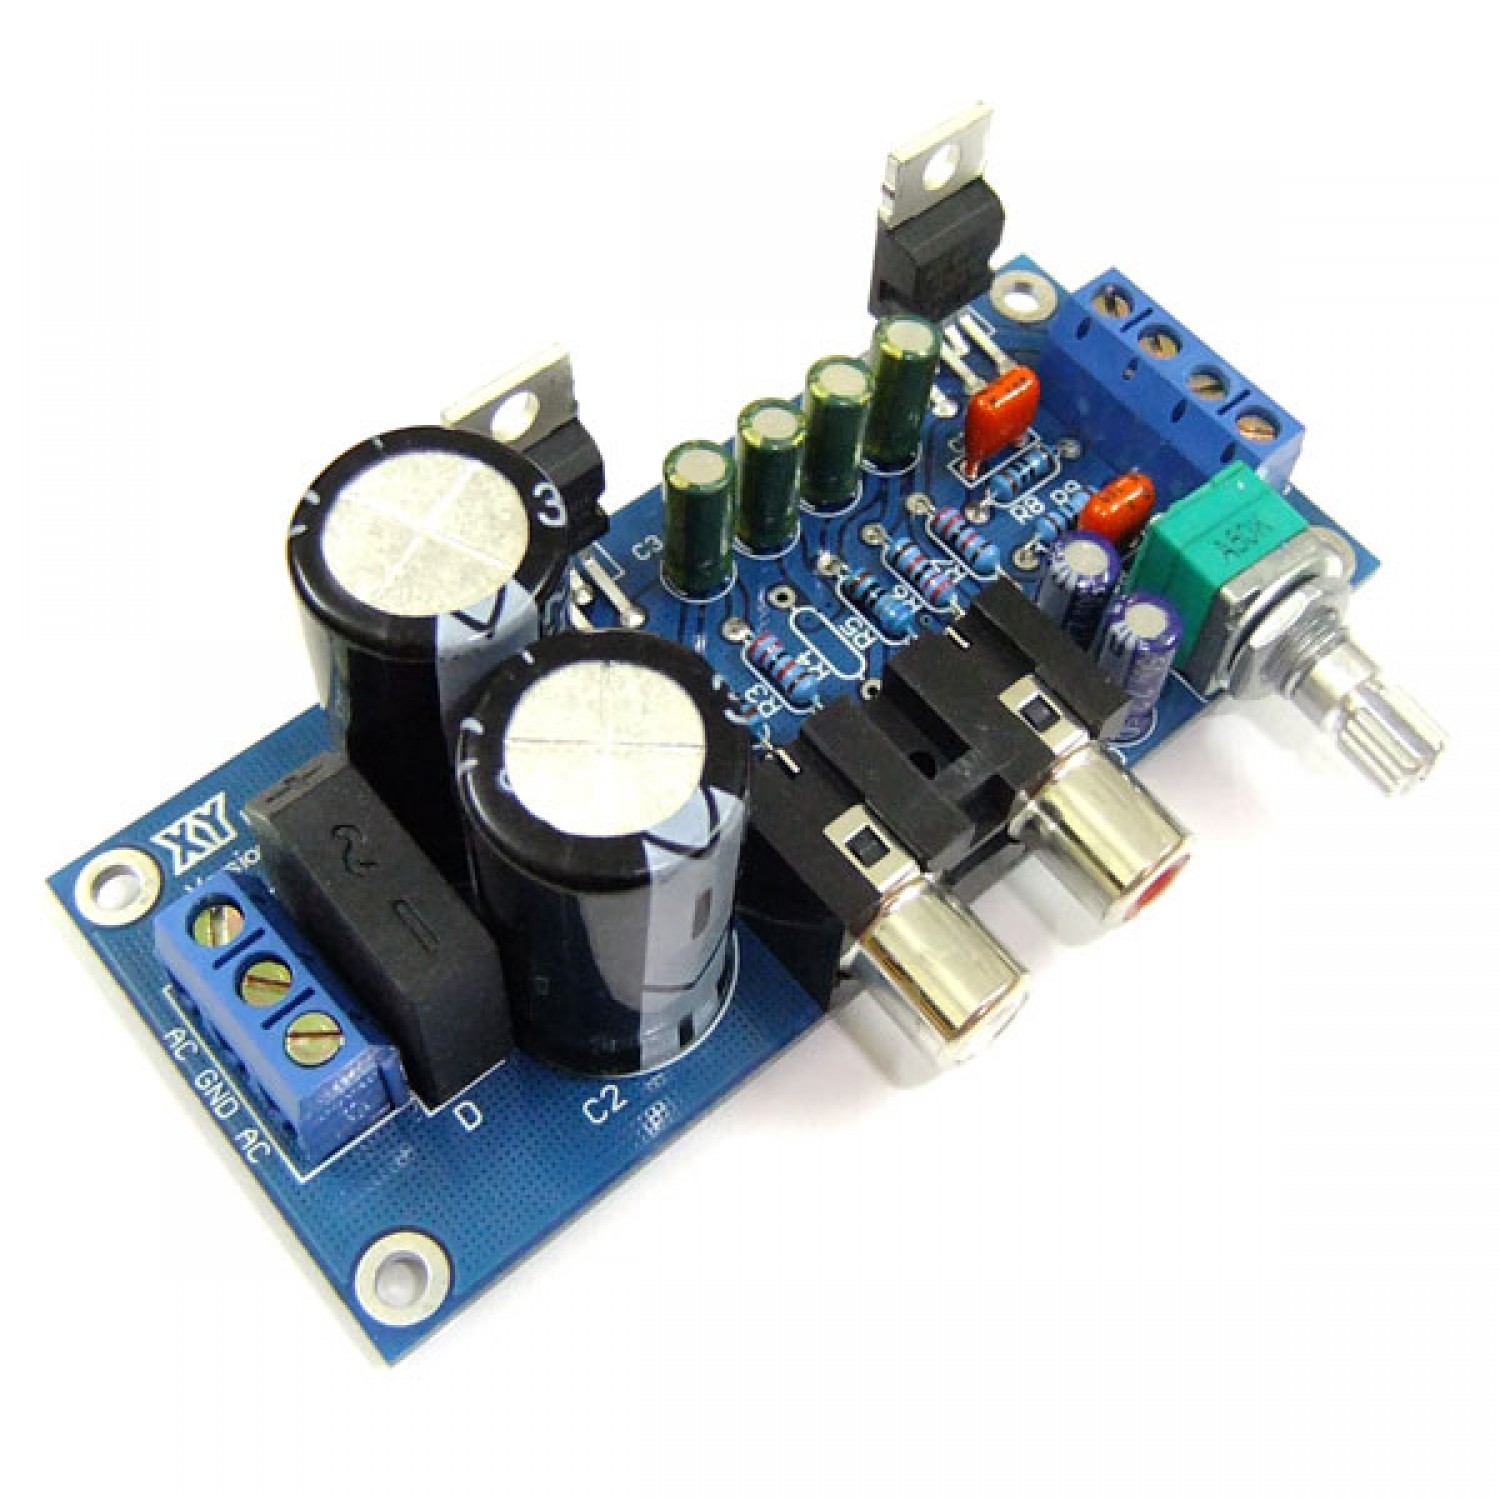 1X TDA2030A DC/AC 12V mono channel Amplifier board 18W amplifier board